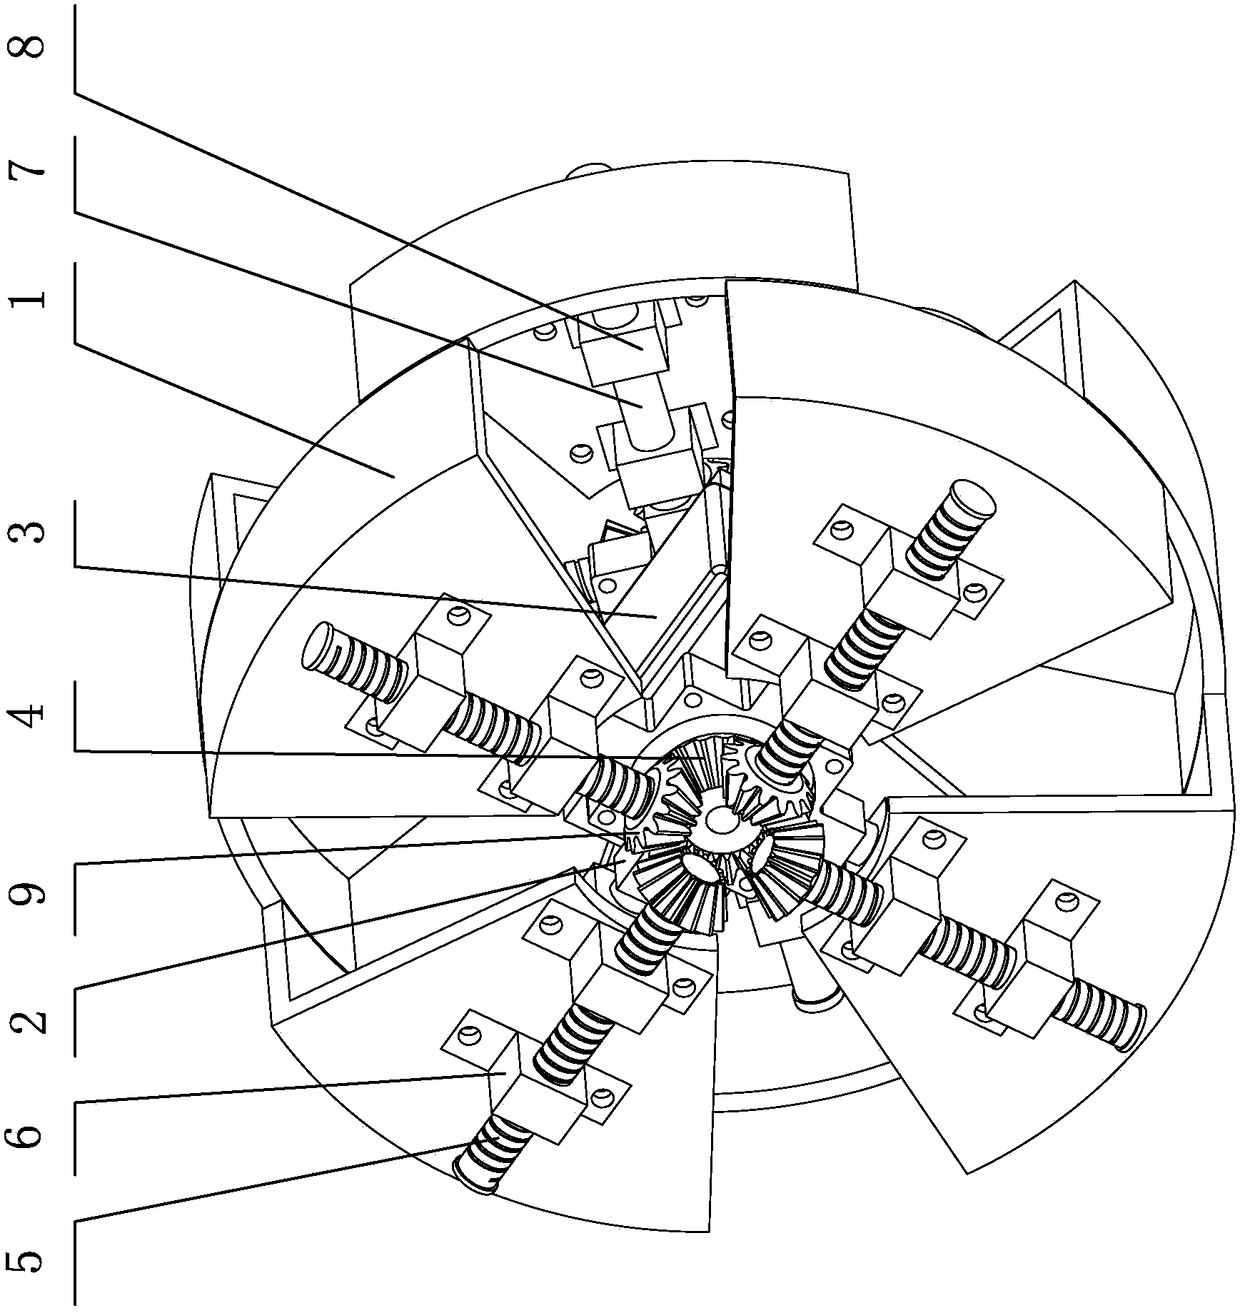 Wheel mechanism with adjustable radius